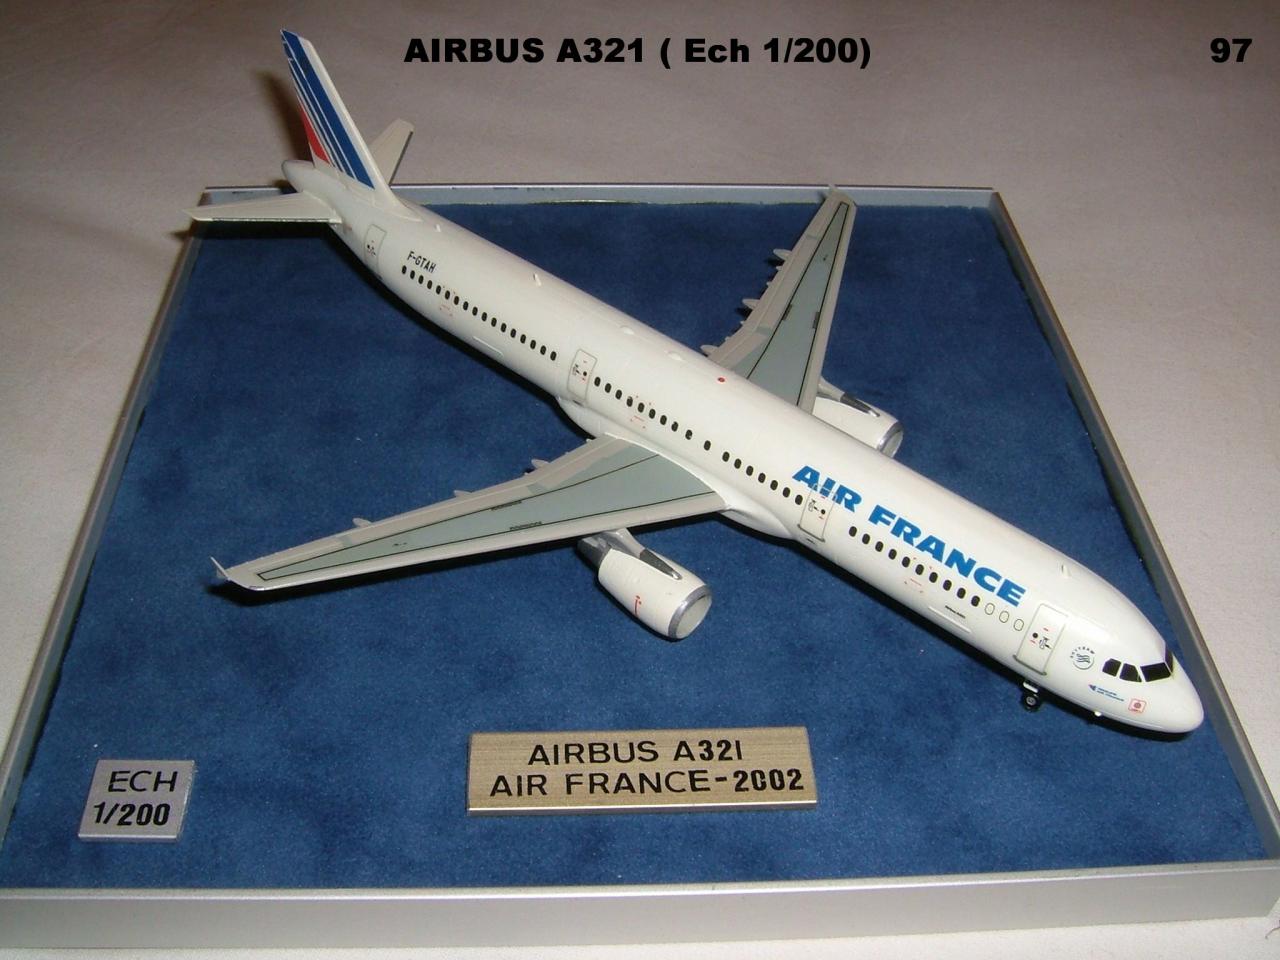 AIRBUS A321 AIR FRANCE